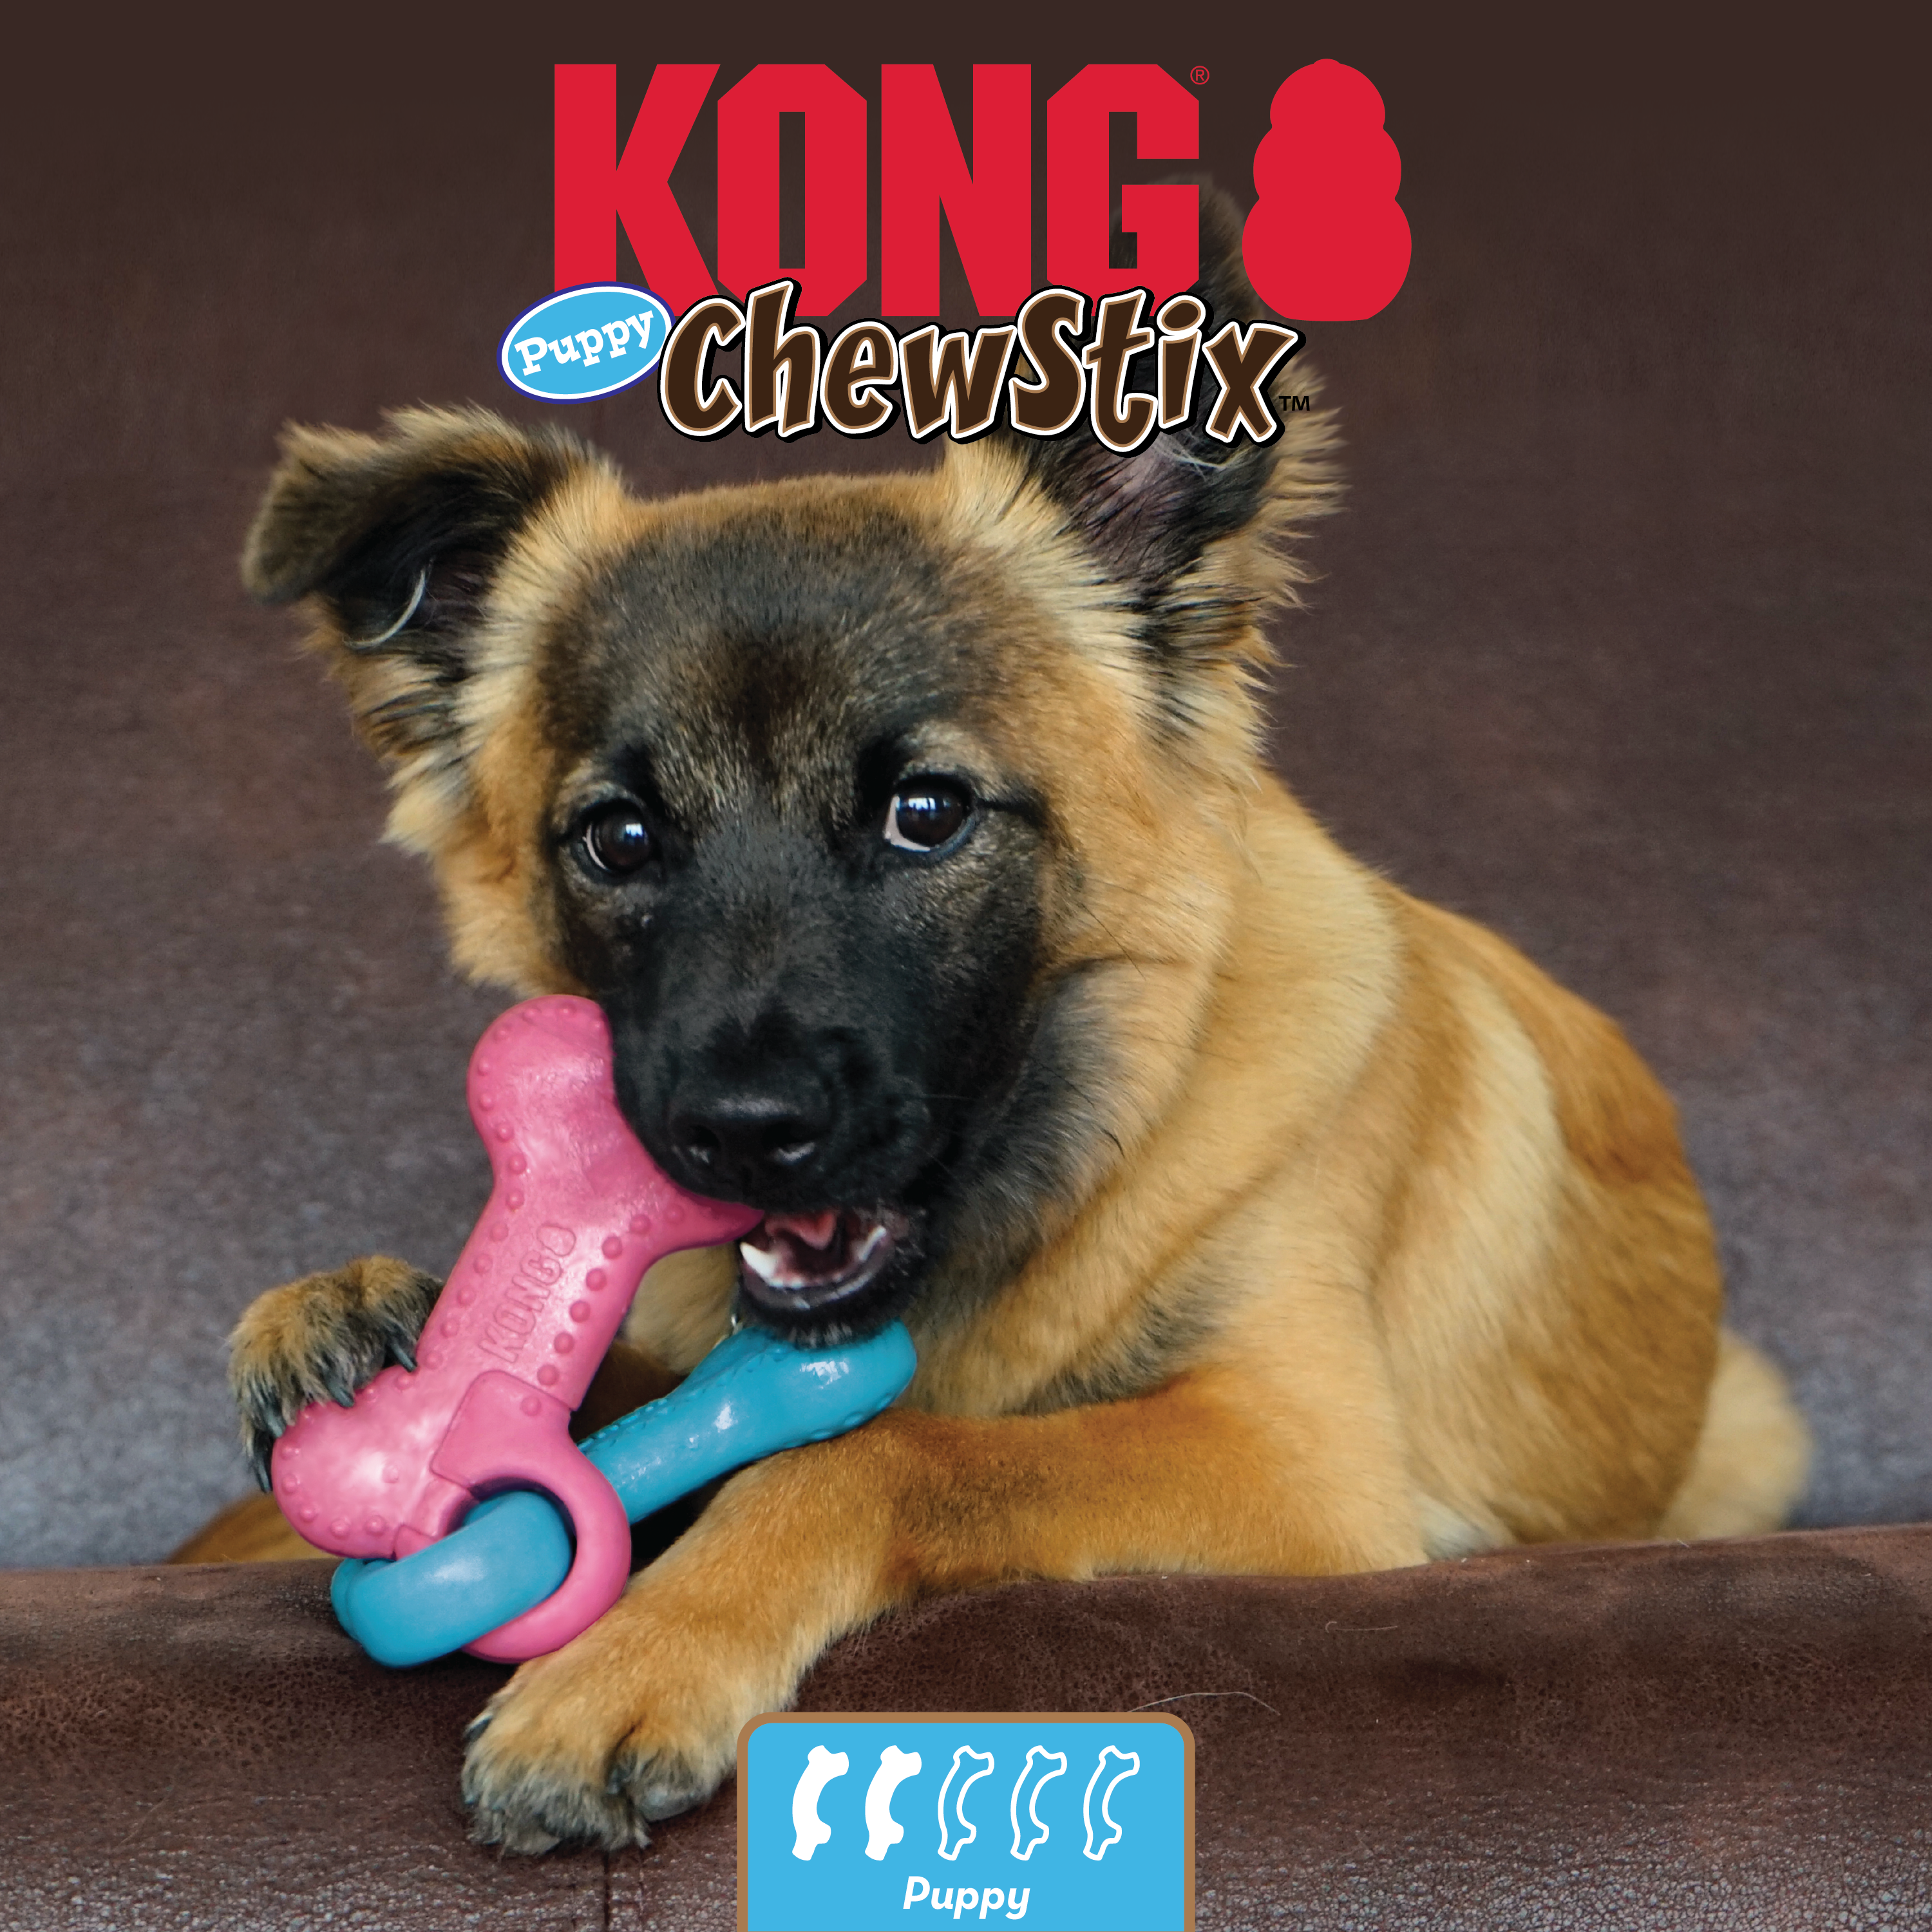 ChewStix Puppy Link Bone estilo de vida imagen de producto